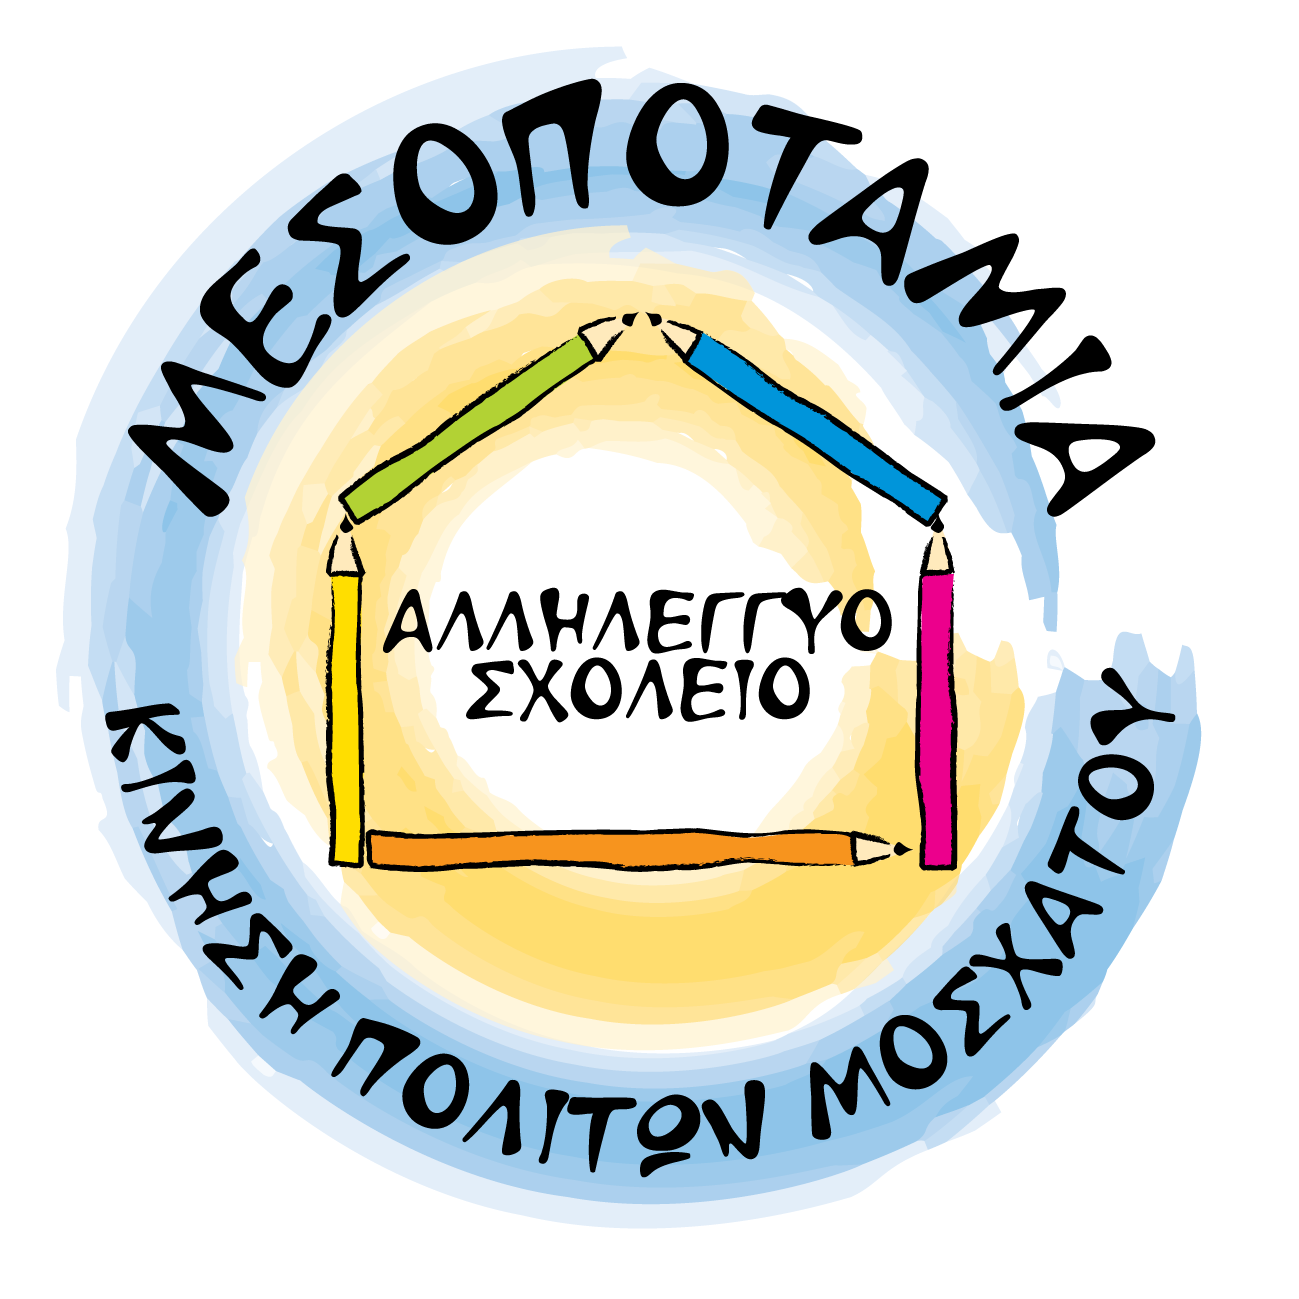 Αλληλέγγυο Σχολείο Μεσοποταμίας | Platform Identity logo